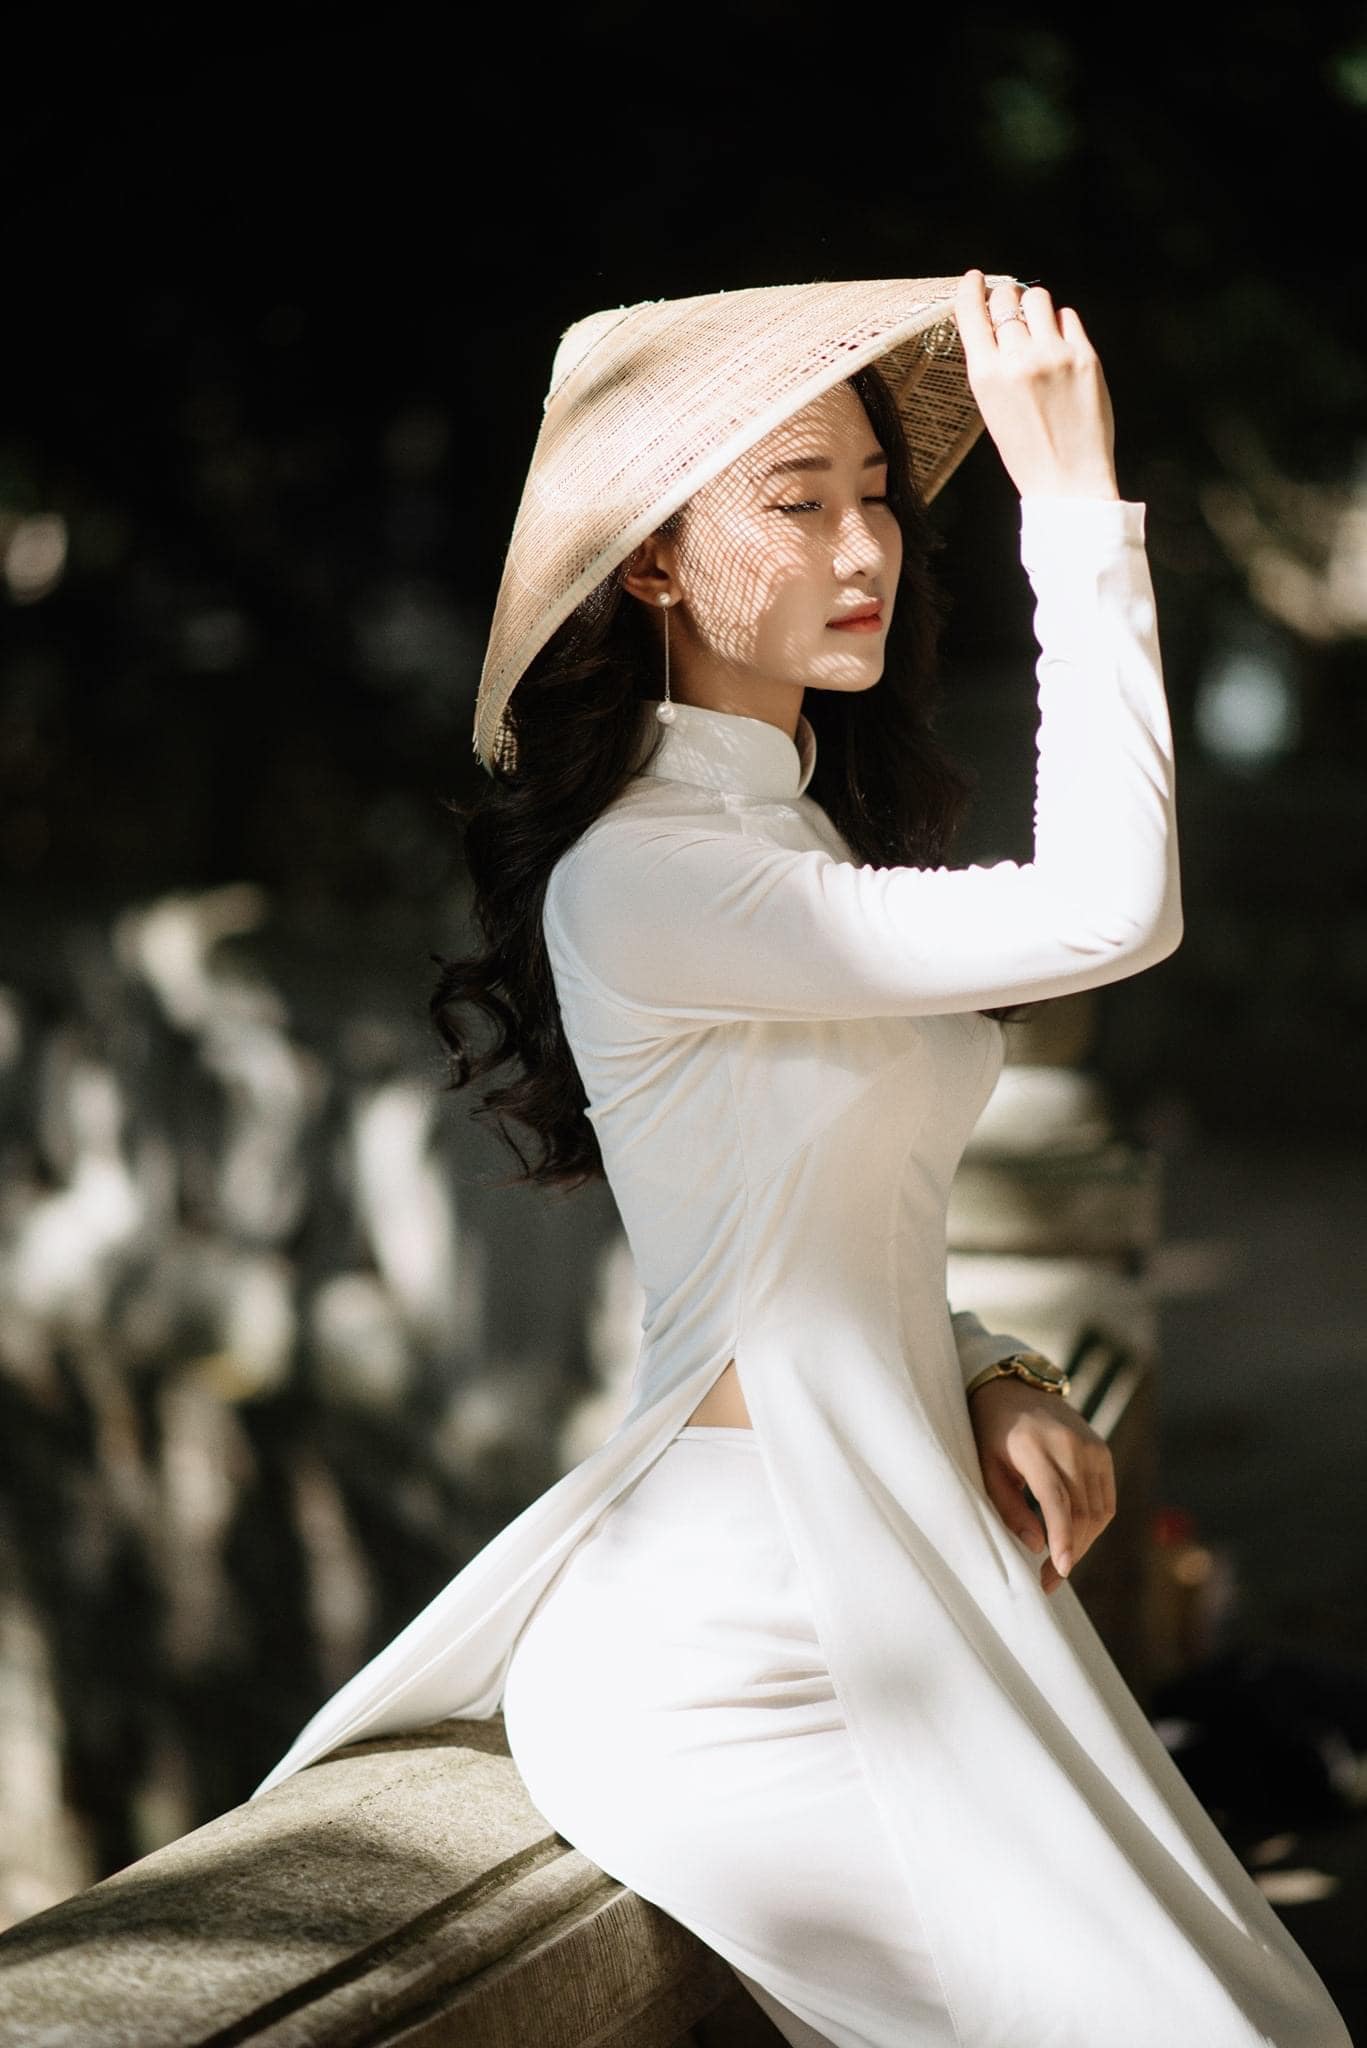 Tao dang voi ao dai 5 - 49 cách tạo dáng chụp ảnh với áo dài tuyệt đẹp - HThao Studio